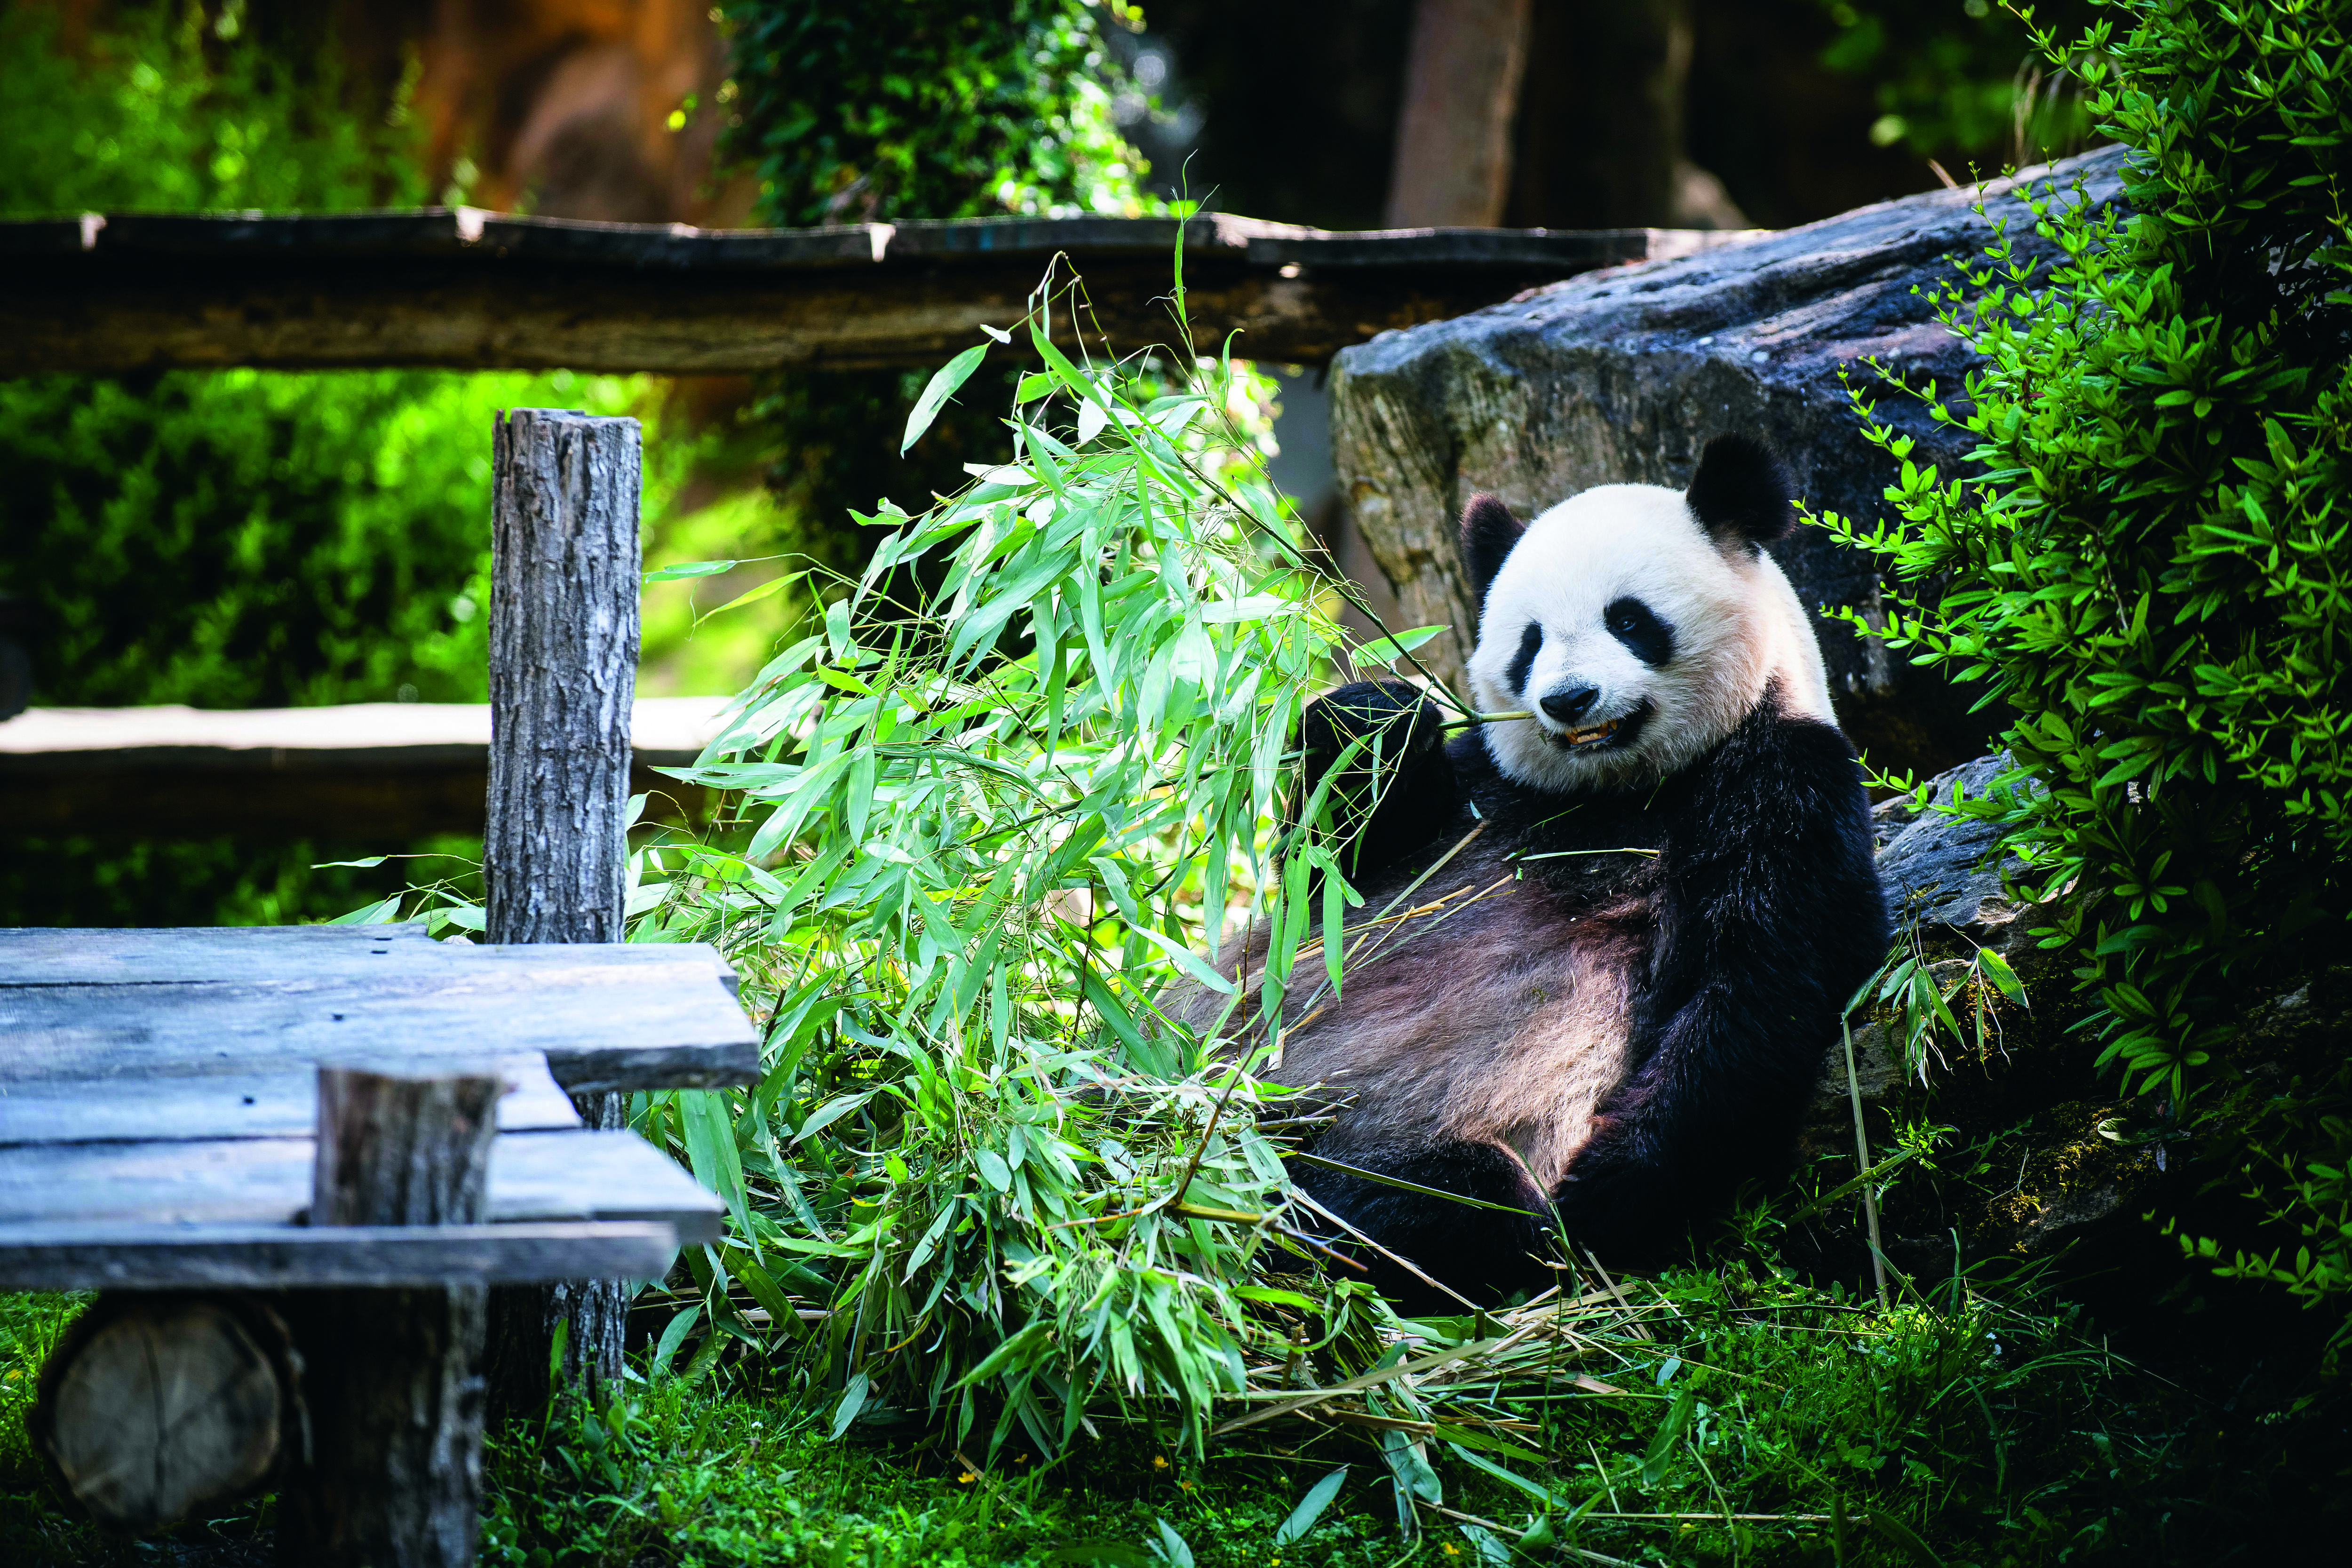 La femelle panda Huan Huan dévore des bambous dans son enclos au ZooParc de Beauval. Le 4 juillet, son fils Yuan Meng partira pour la Chine. Photo Vincent Boisot pour Le Parisien Week-End